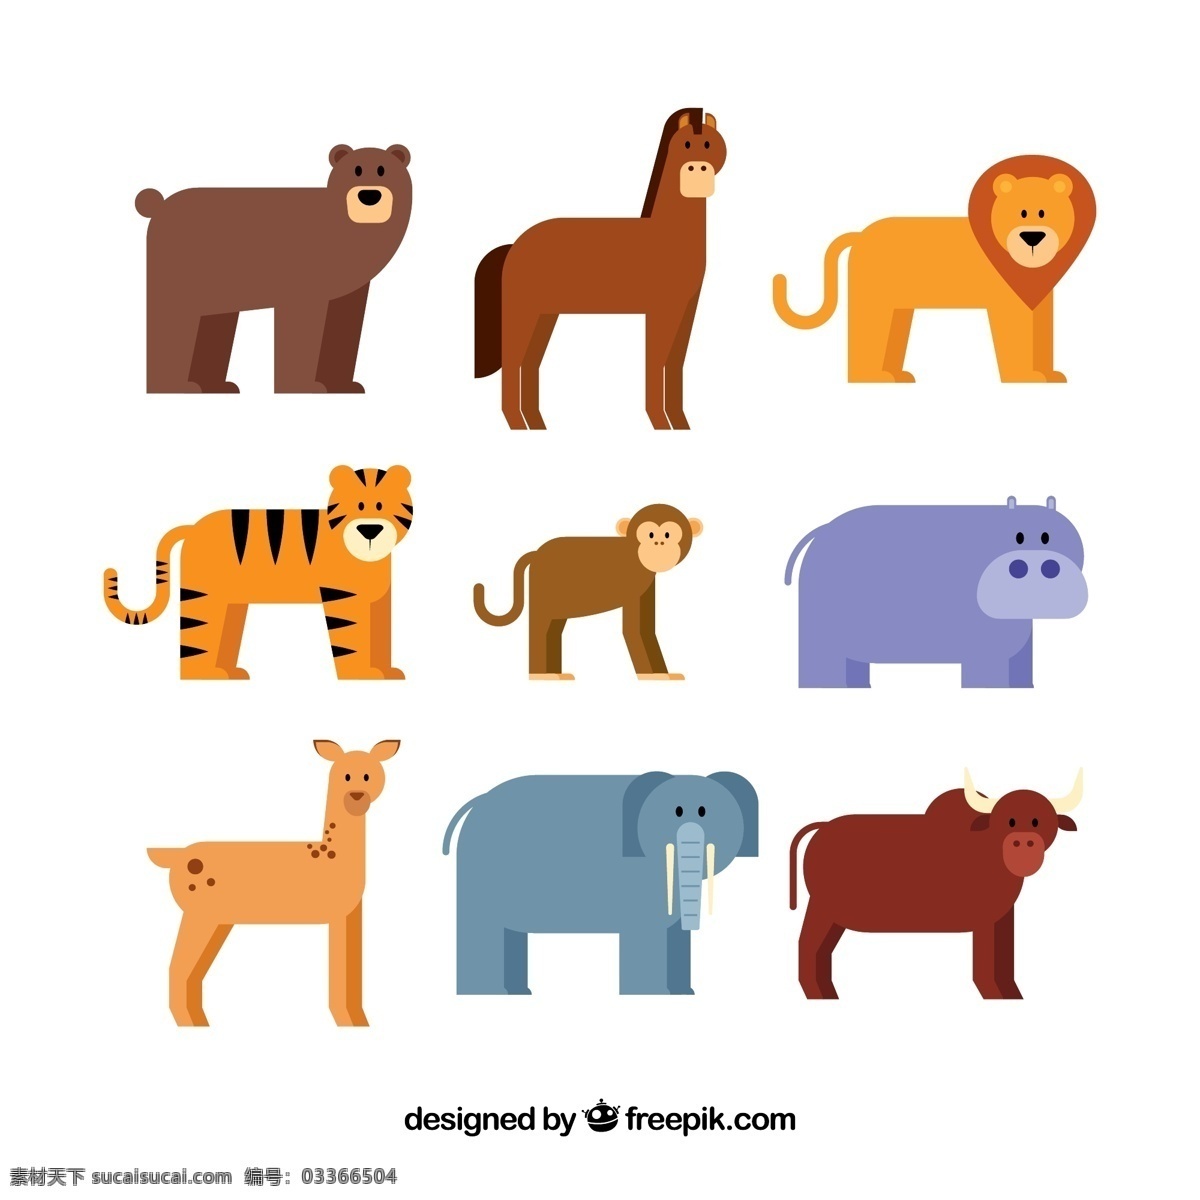 组 四 只 腿 小 动物 元素 设计素材 创意设计 小动物 卡通 可爱 矢量素材 憨厚